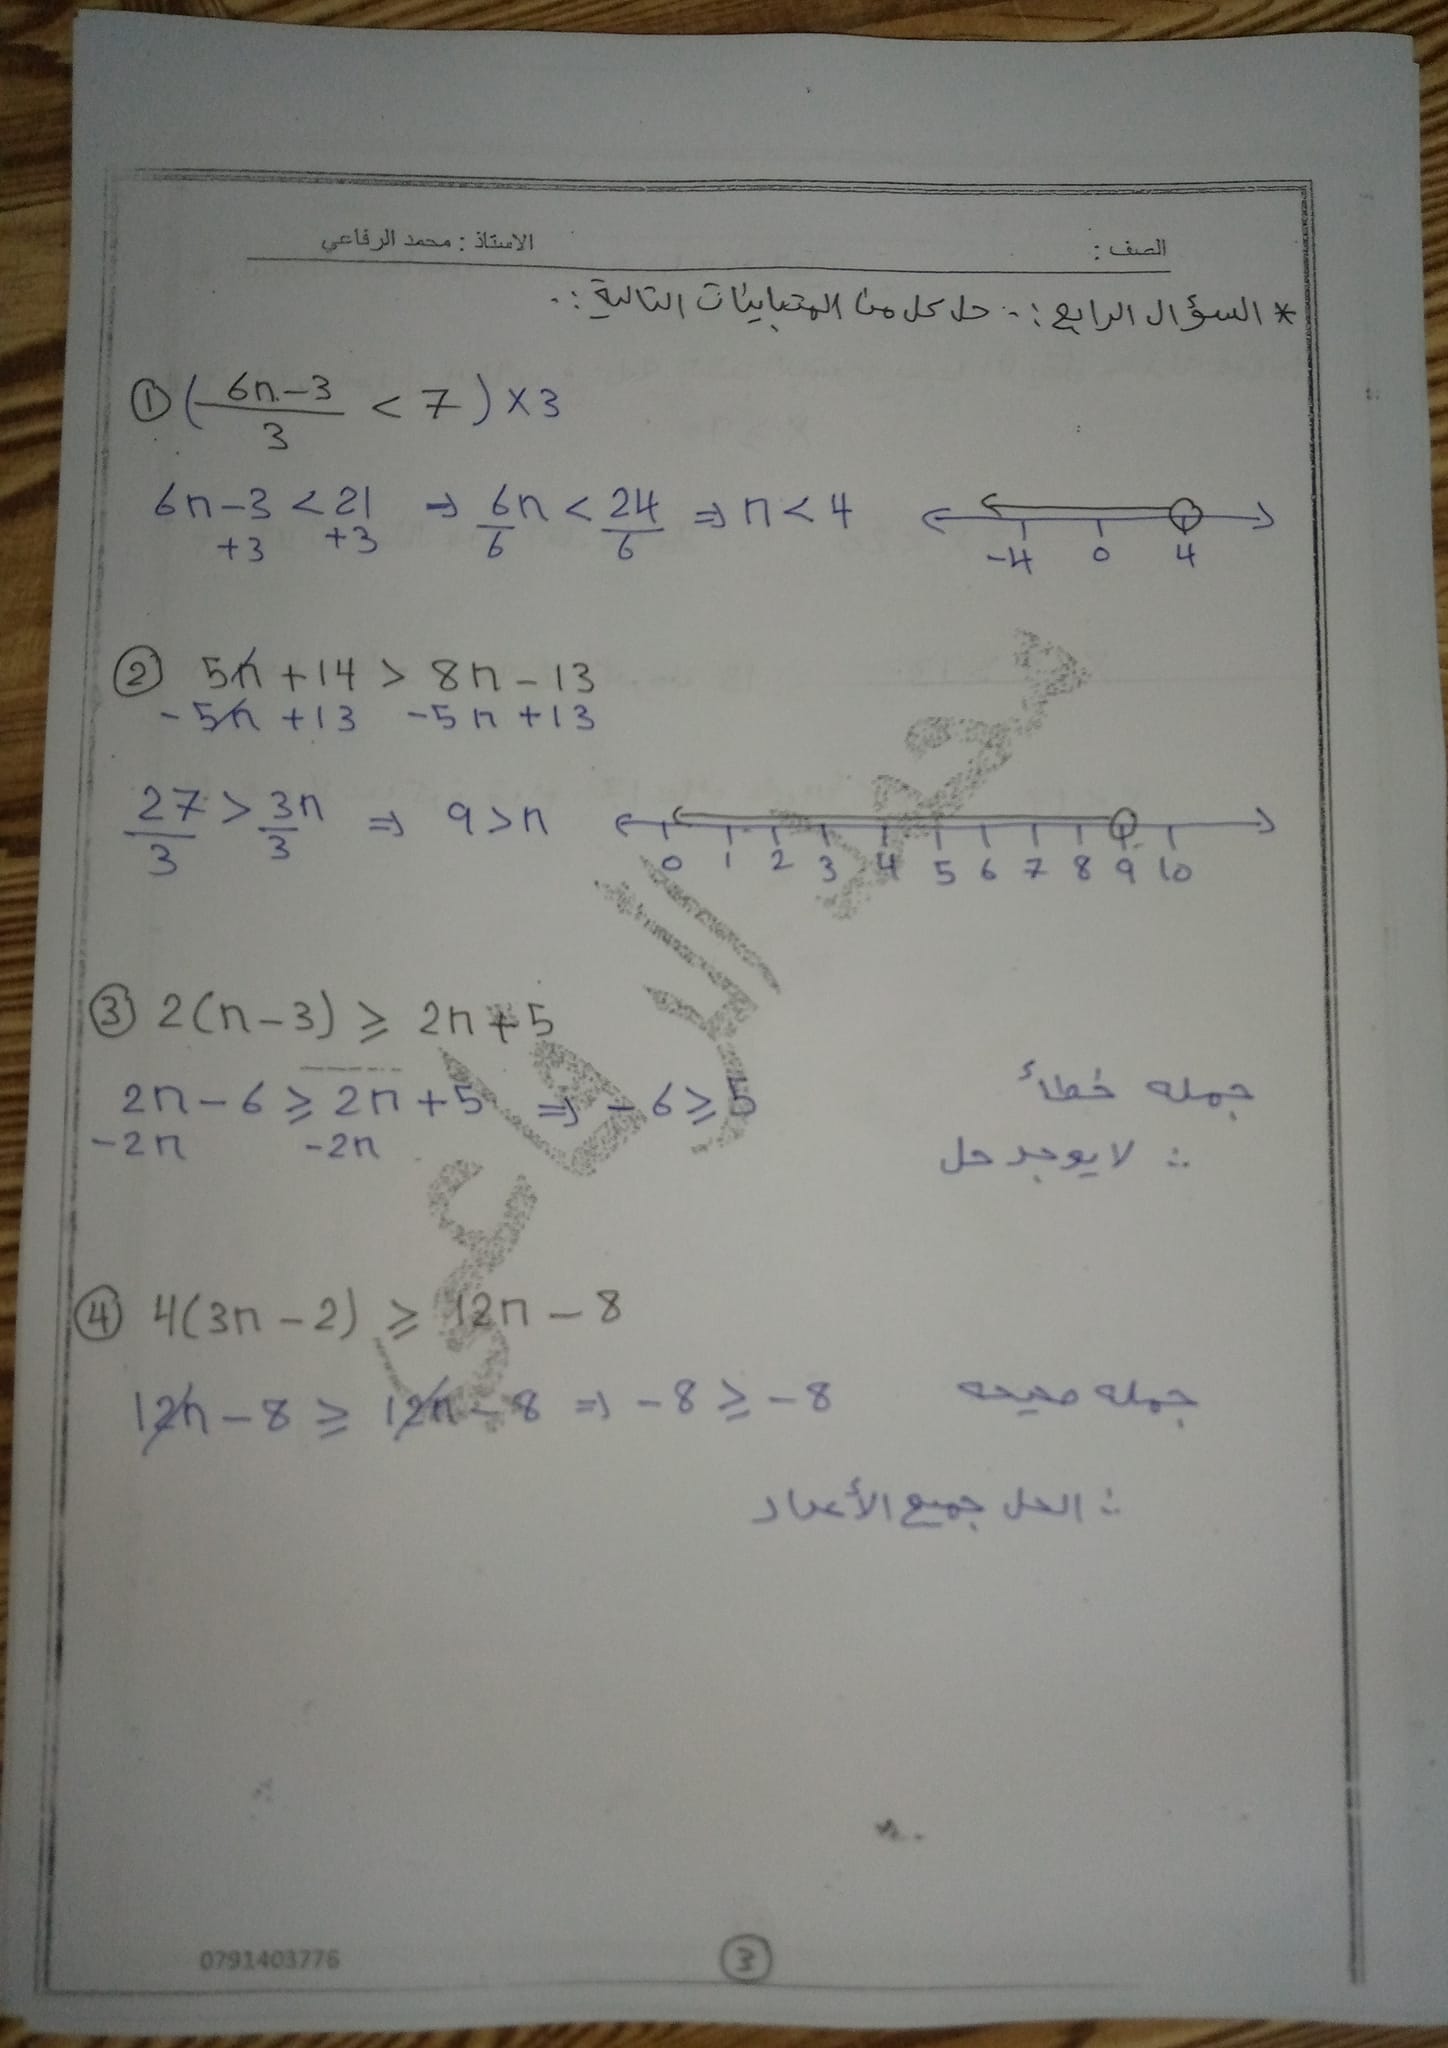 3 صور امتحان رياضيات الشهر الاول للصف الثامن الفصل الثاني 2022 مع الحل.jpg